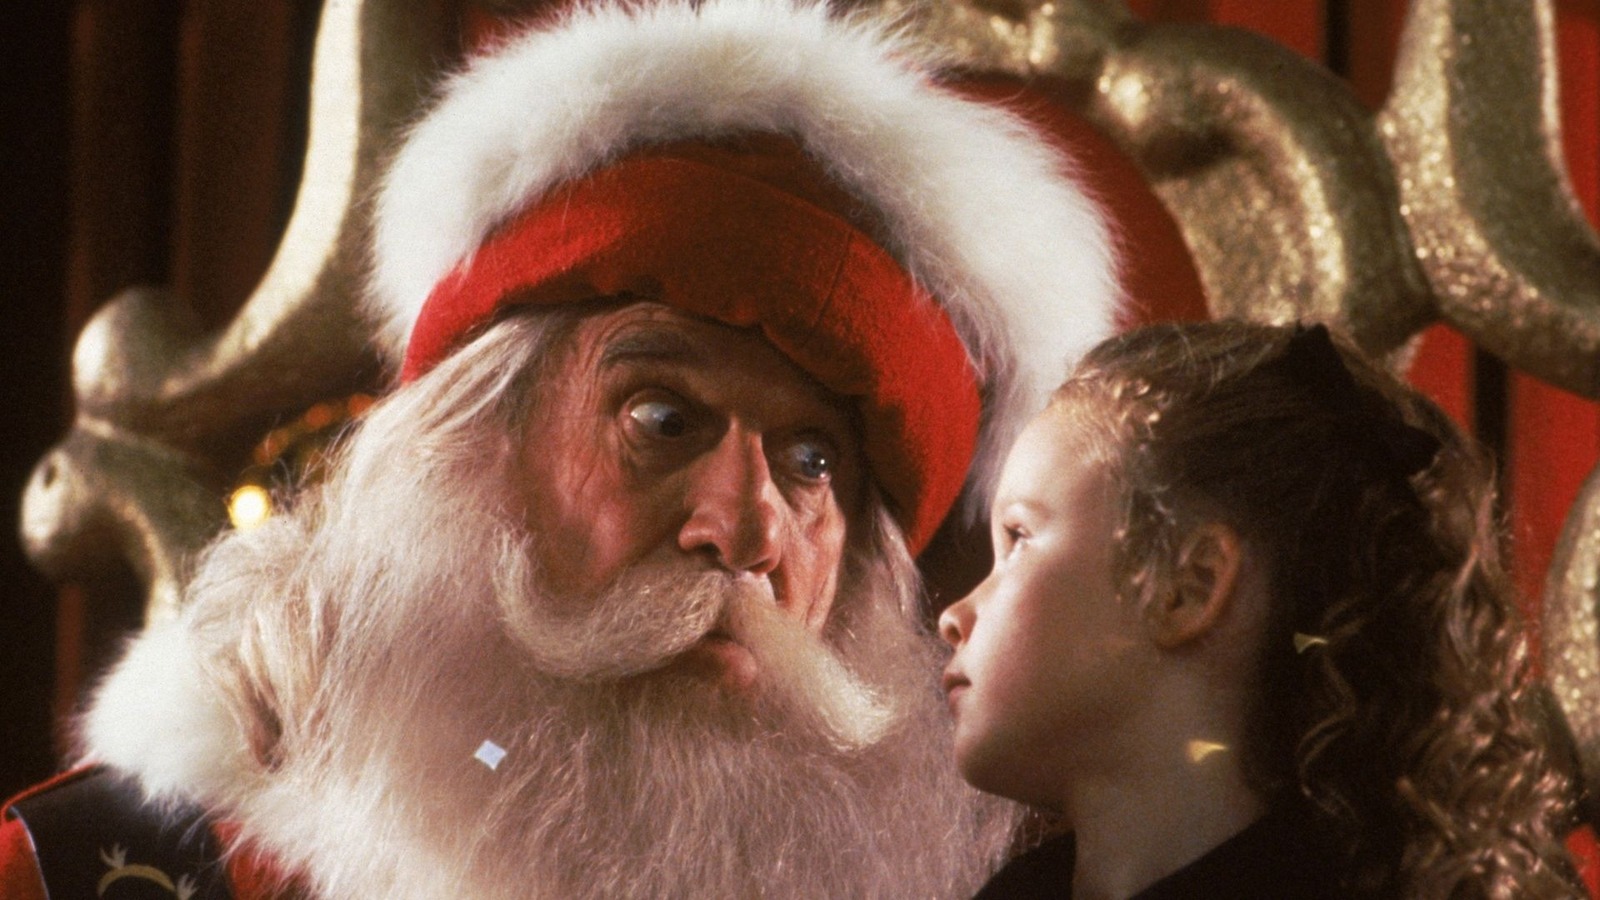 لعبت ليزلي نيلسن دور سانتا كلوز في أكثر من فيلم واحد ، لم يفعله سوى عدد قليل من الممثلين